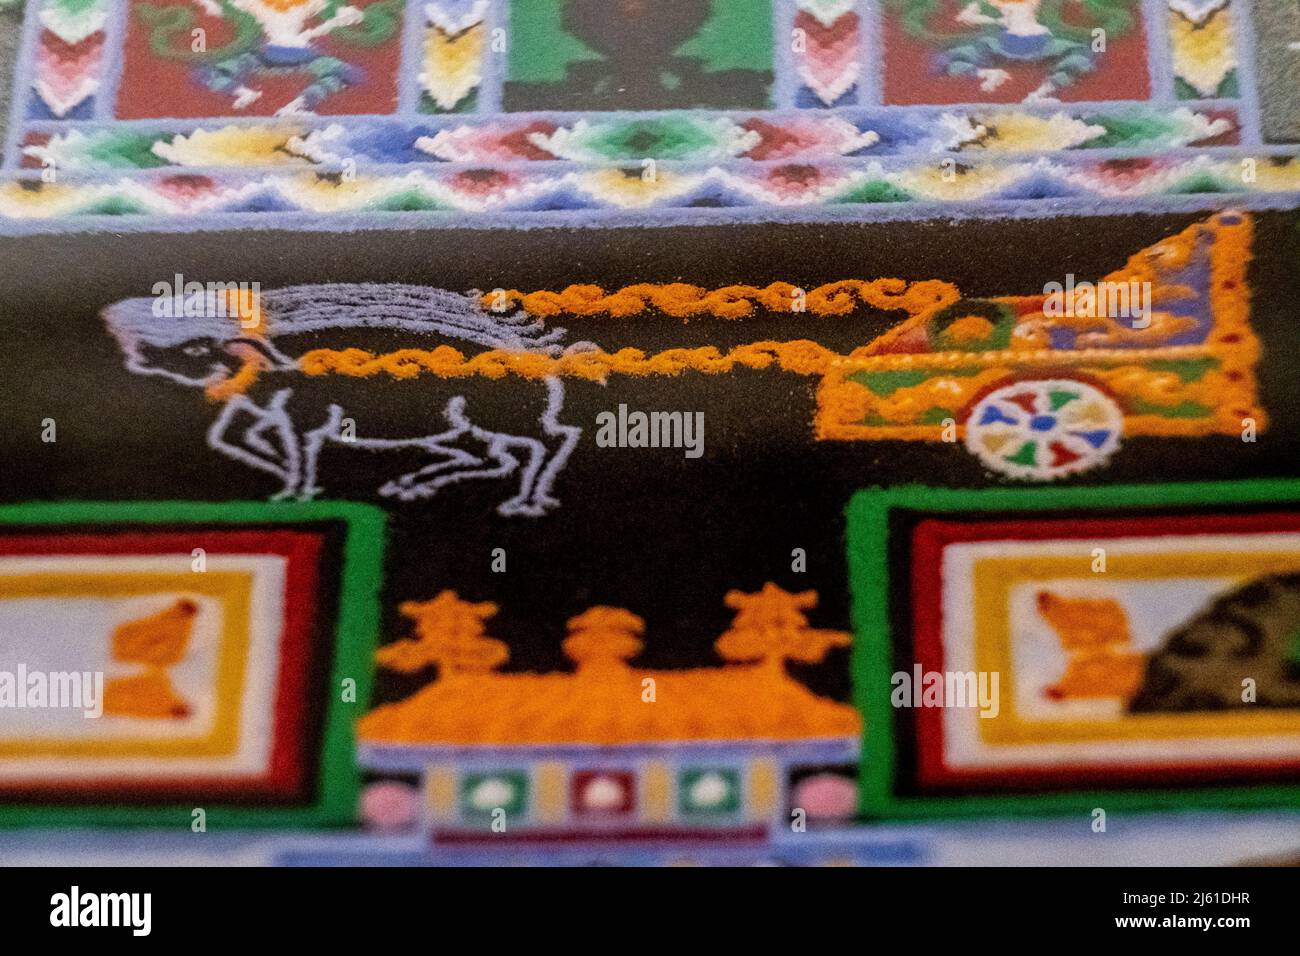 pig drawn cart, Kalachakcra buddhist mandala, Dalai Lama gift, pollensa museum, Majorca, Balearic Islands, Spain Stock Photo